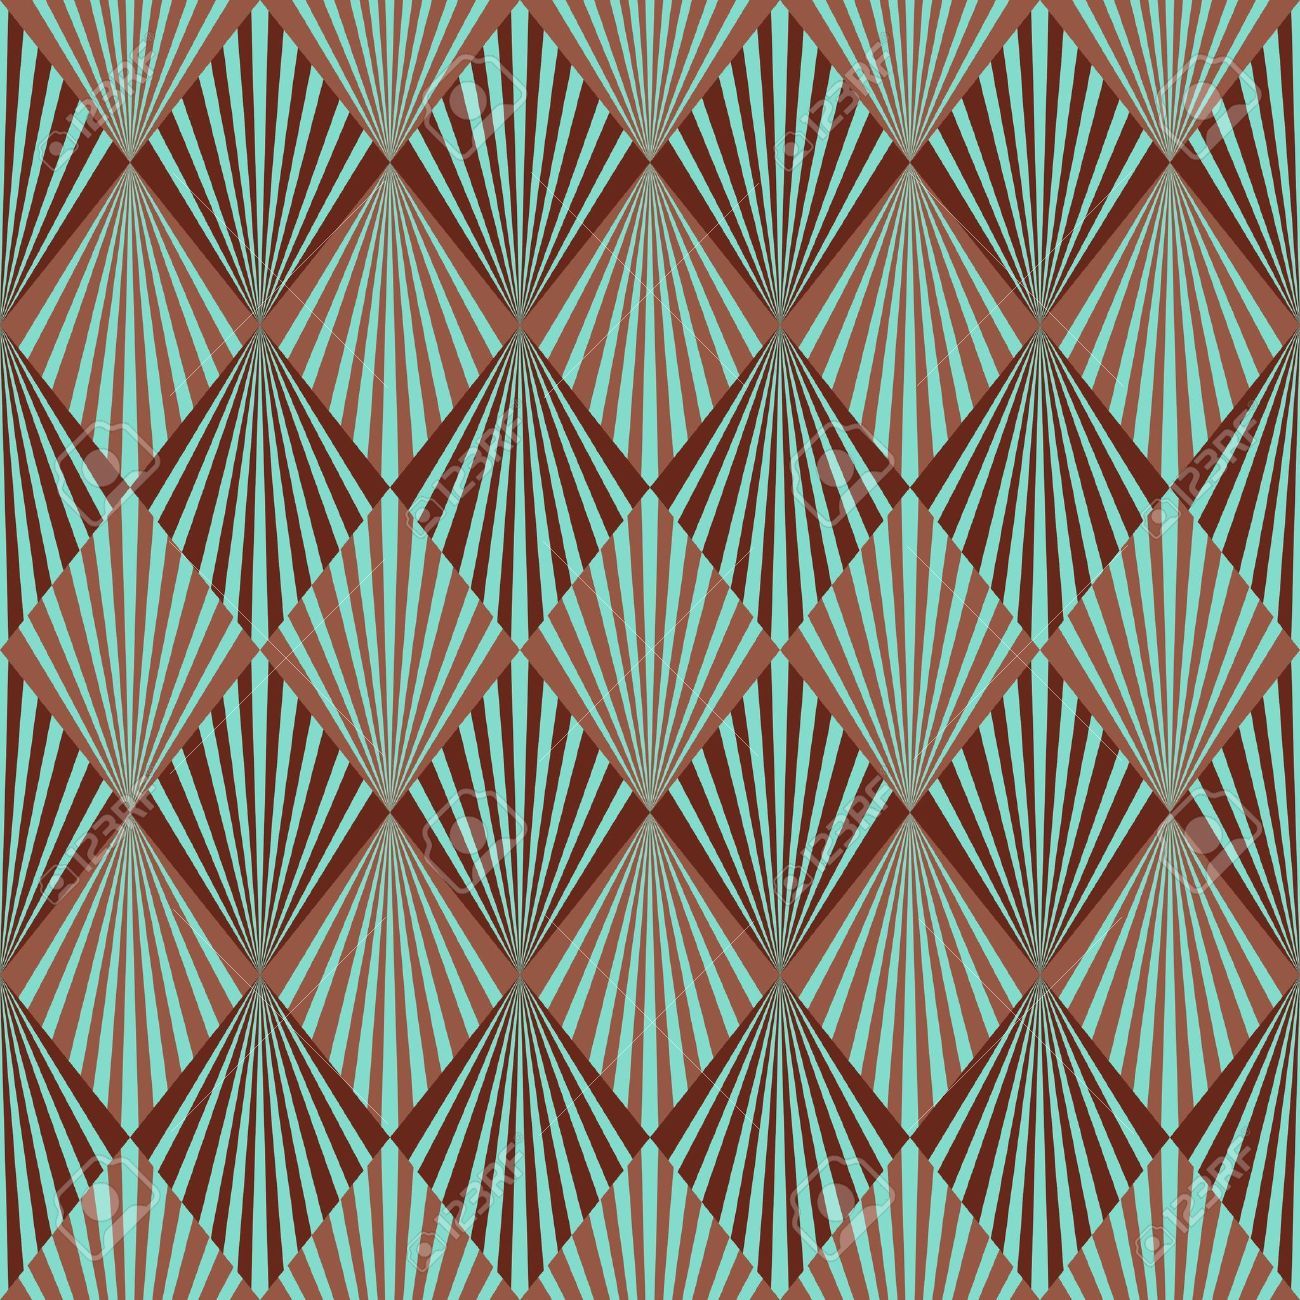 アールデコスタイルの壁紙,パターン,ライン,パターン,設計,対称